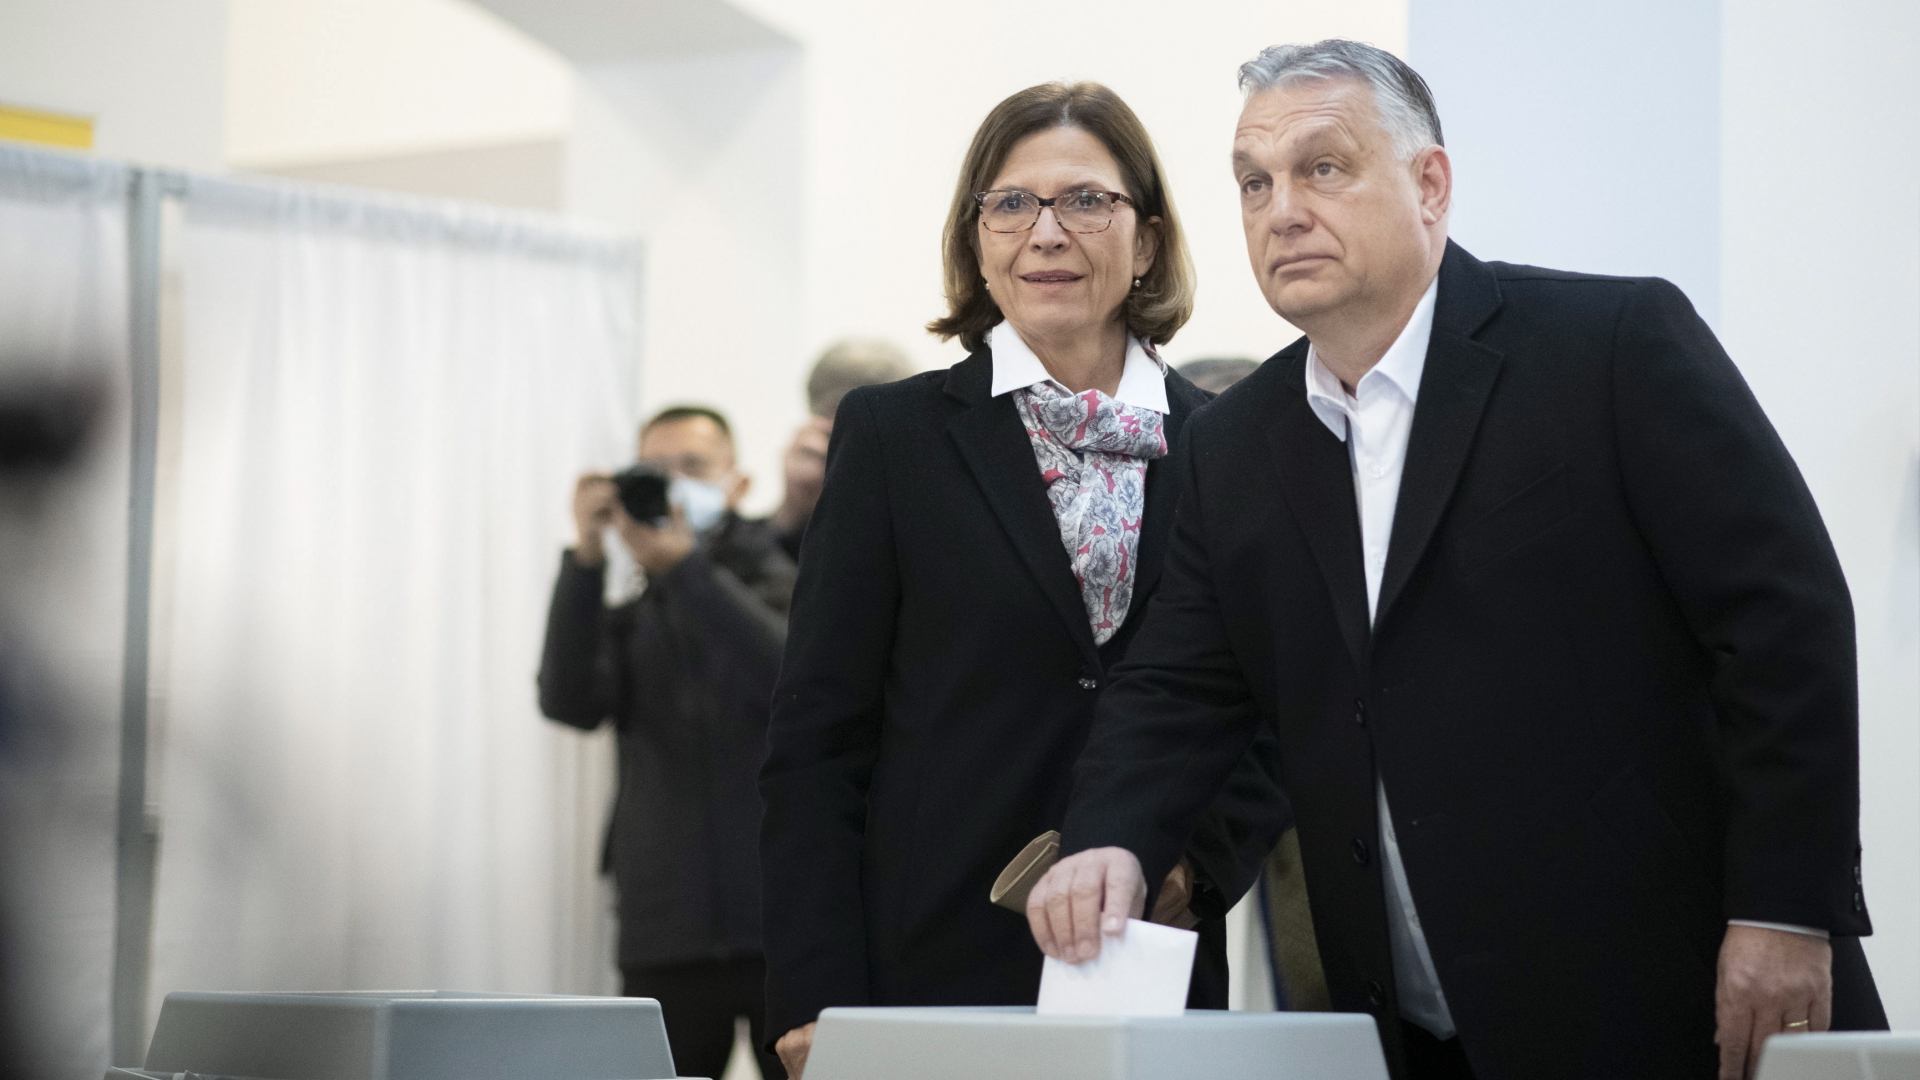 Viktor Orban und seine Ehefrau bei der Stimmabgabe in einem Wahllokal in Budapest. | EPA